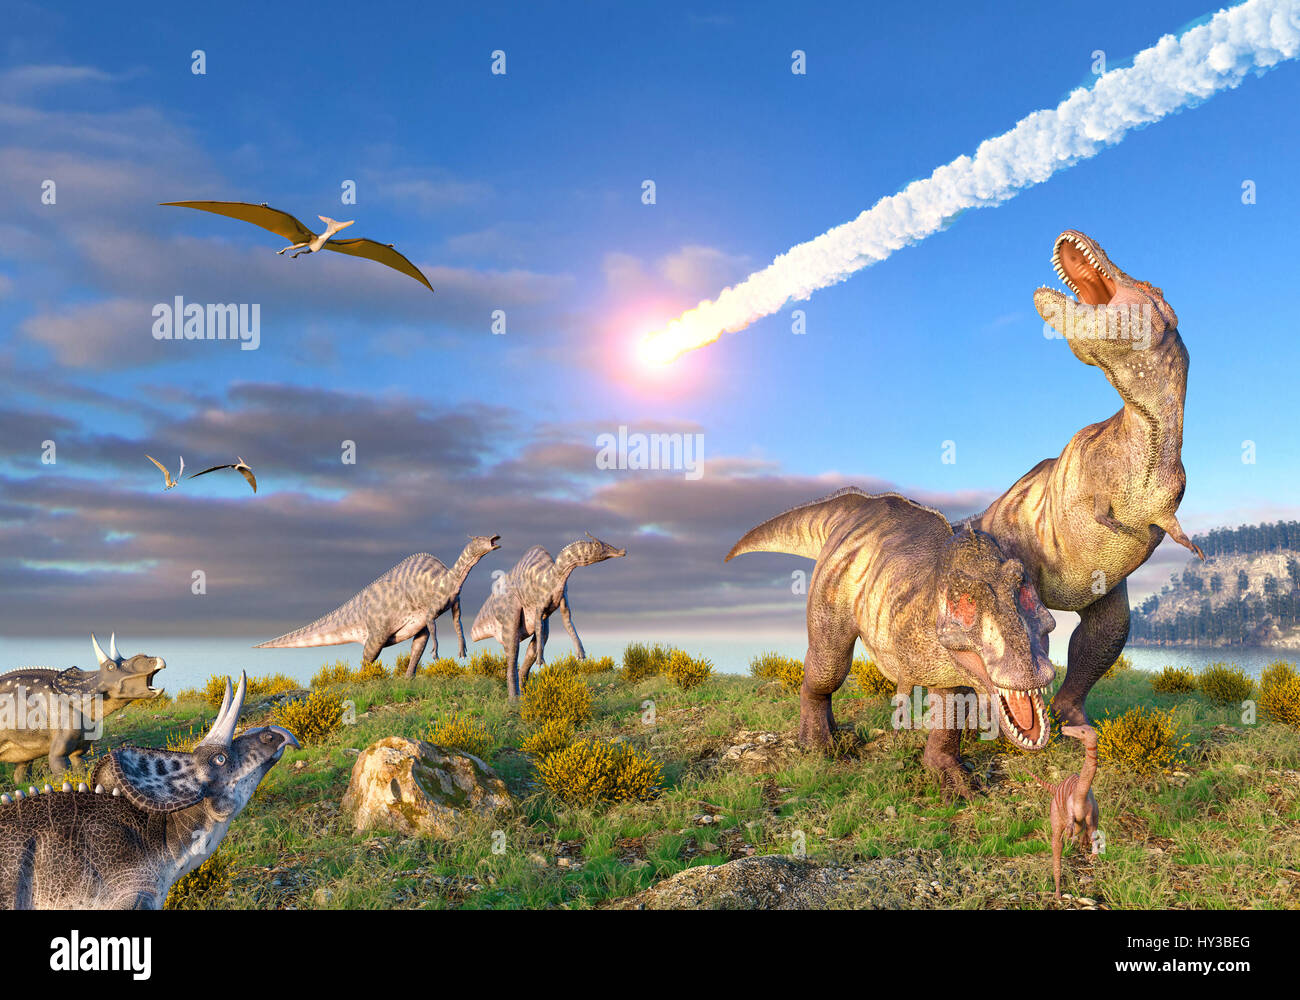 Illustration de l'événement de K/T à la fin de la période du Crétacé. Une dizaine de kilomètres de large astéroïde ou une comète est dans l'atmosphère terrestre comme les dinosaures, y compris le T. rex, regarde. Banque D'Images